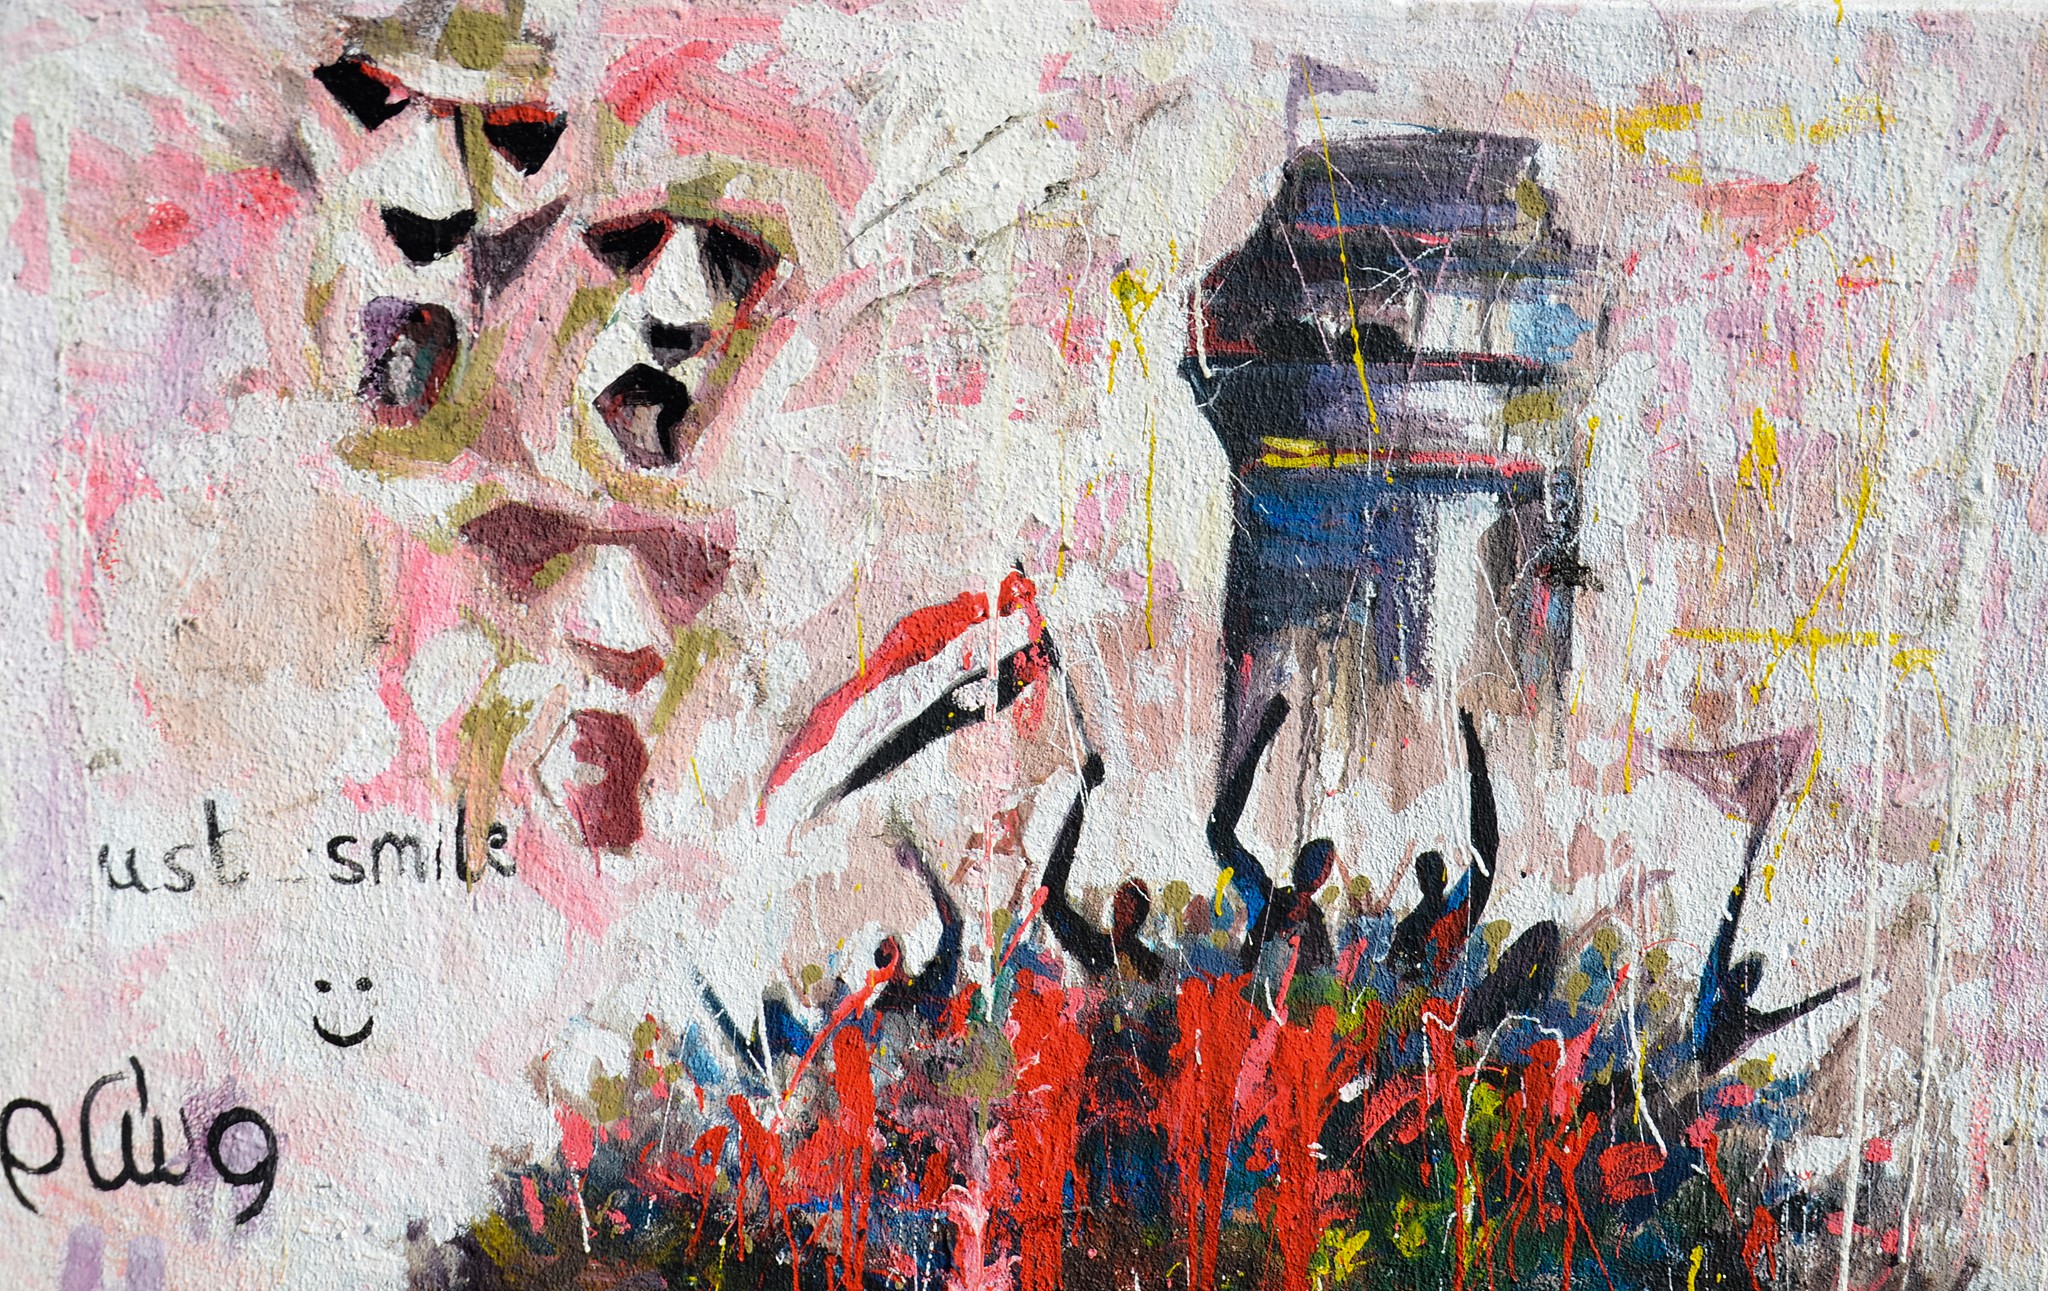 تدعو جمعية الفنانين التشكيليين العراقيين الفنانين أصحاب الأعمال المرفقة في هذا الأعلان للحضور الى مقر الجمعية | جمعية الفنانين التشكيليين العراقيين